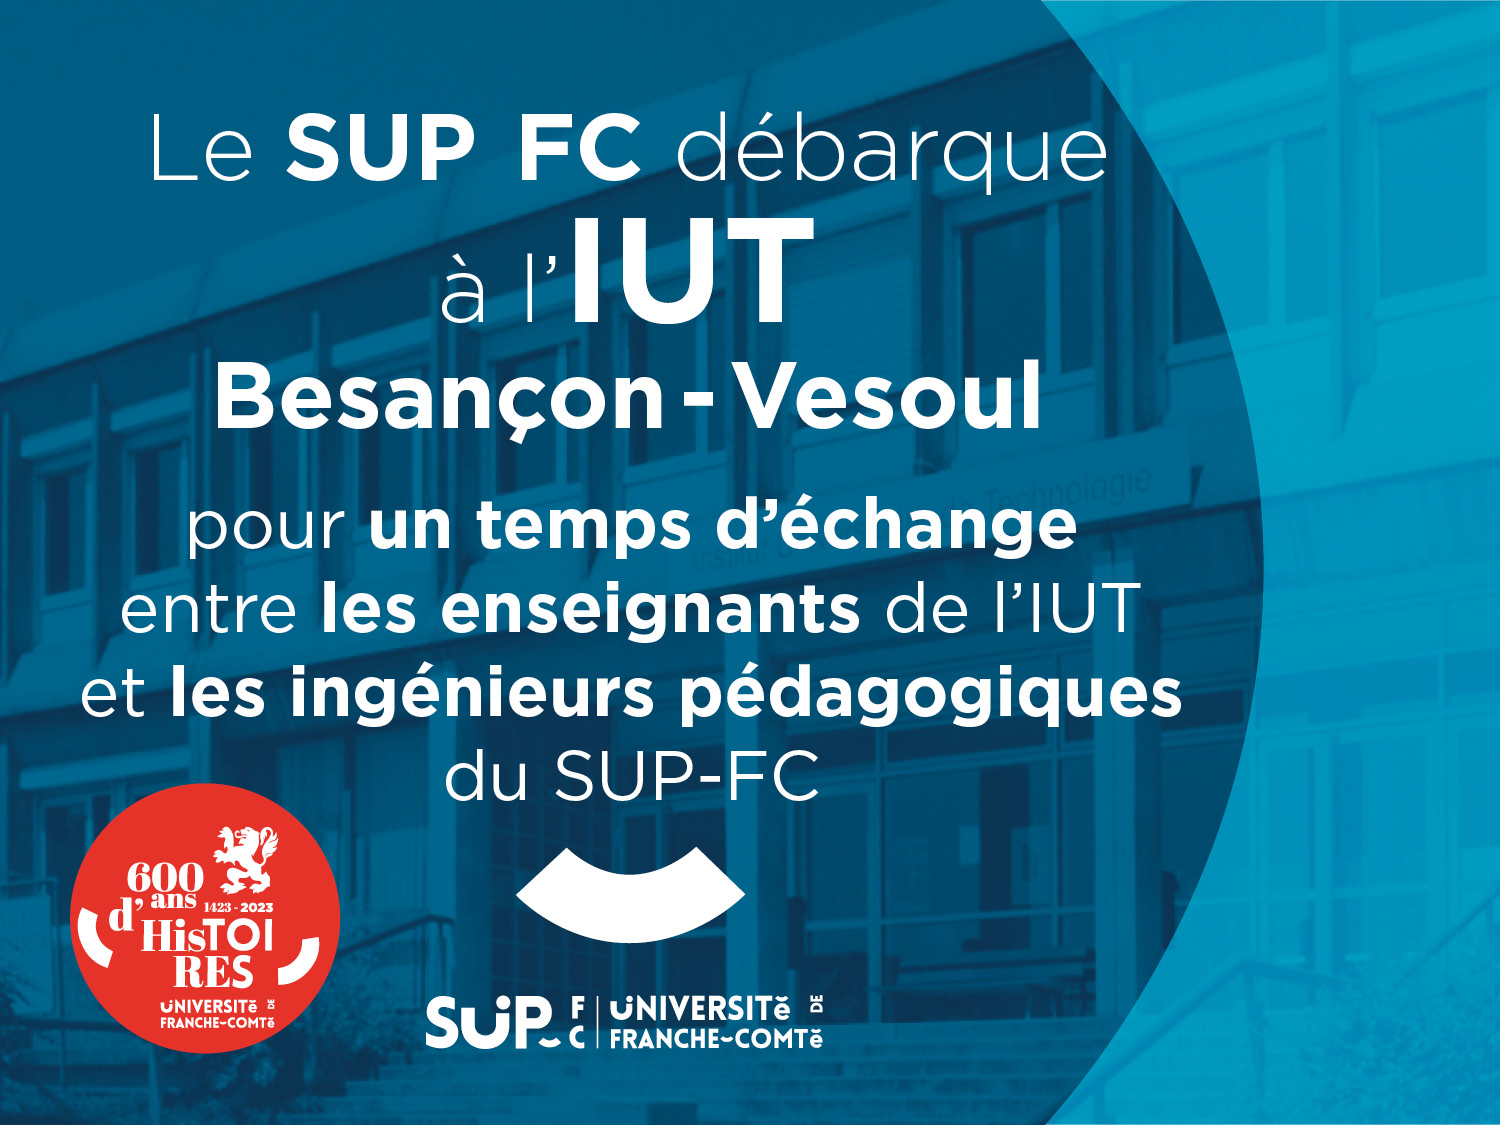 Le SUP-FC débarque à l’IUT Besançon – Vesoul pour un temps d'échange entre les enseignants de l'IUT et les ingénieurs pédagogiques du SUP-FC 